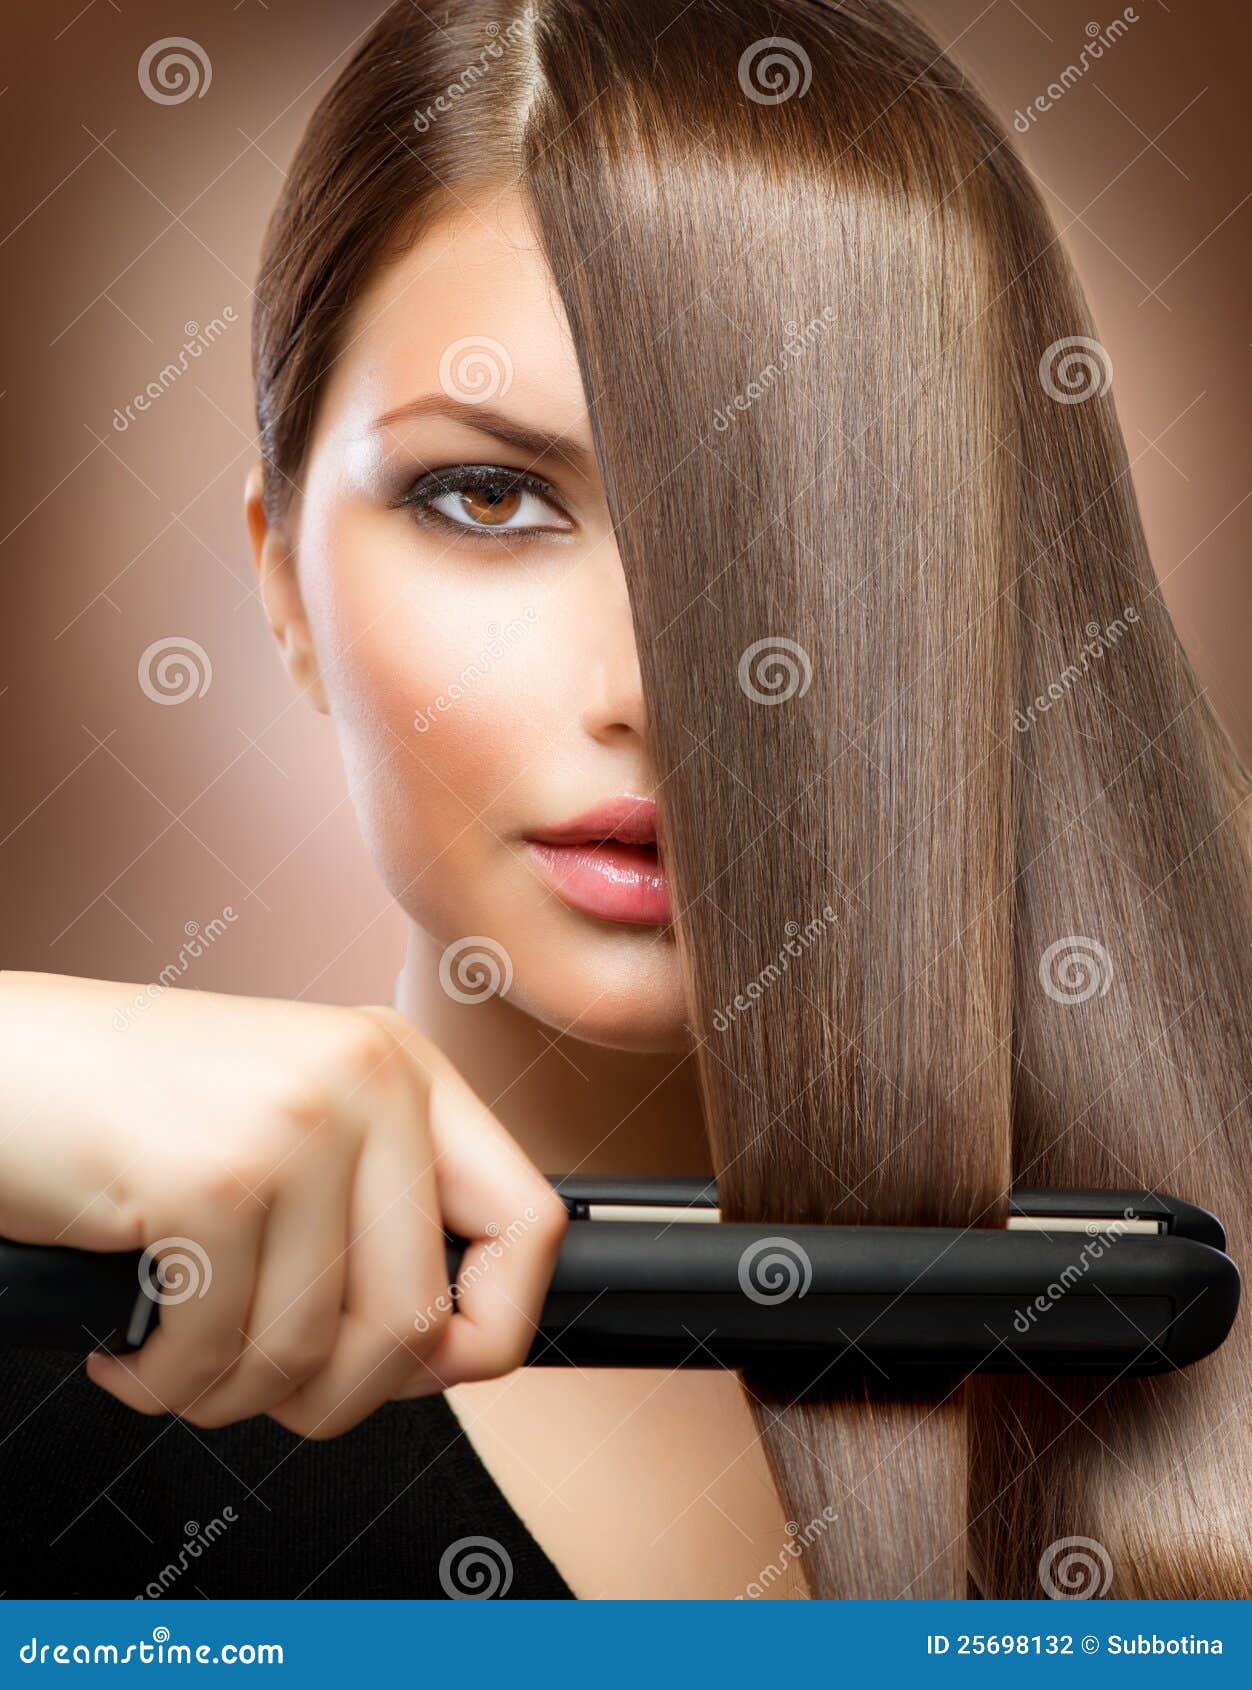 hair straightening irons